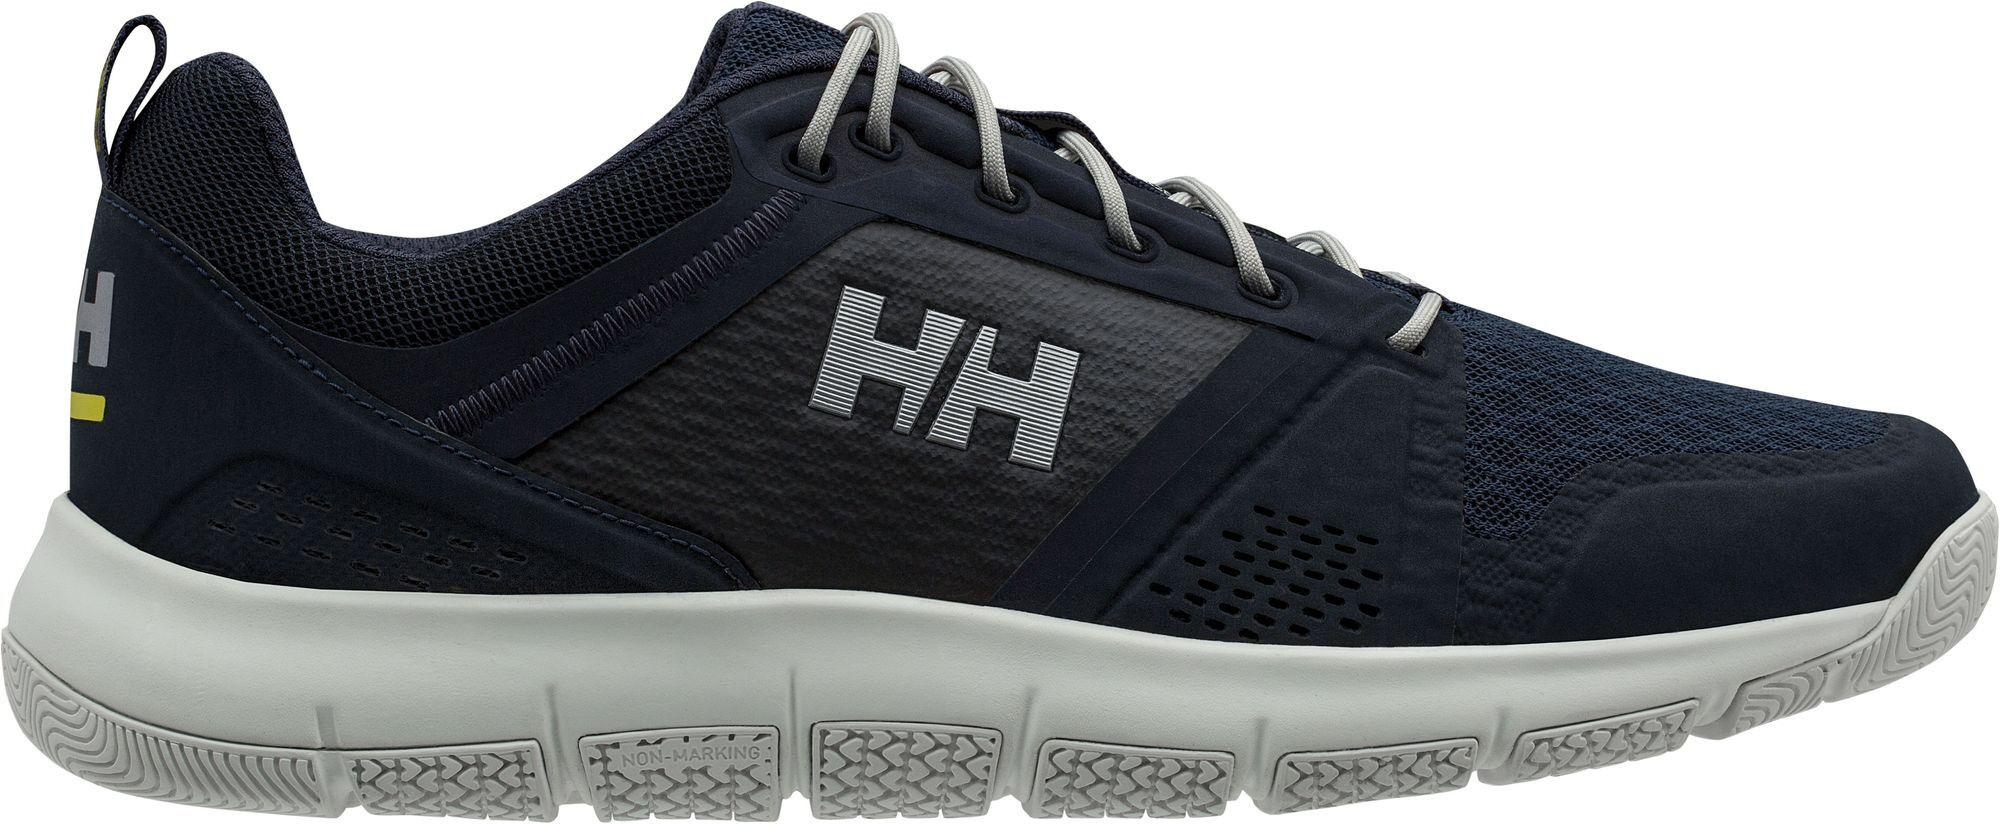 Helly Hansen Skagen F-1 Offshore - Sailing shoes - Men's | Hardloop